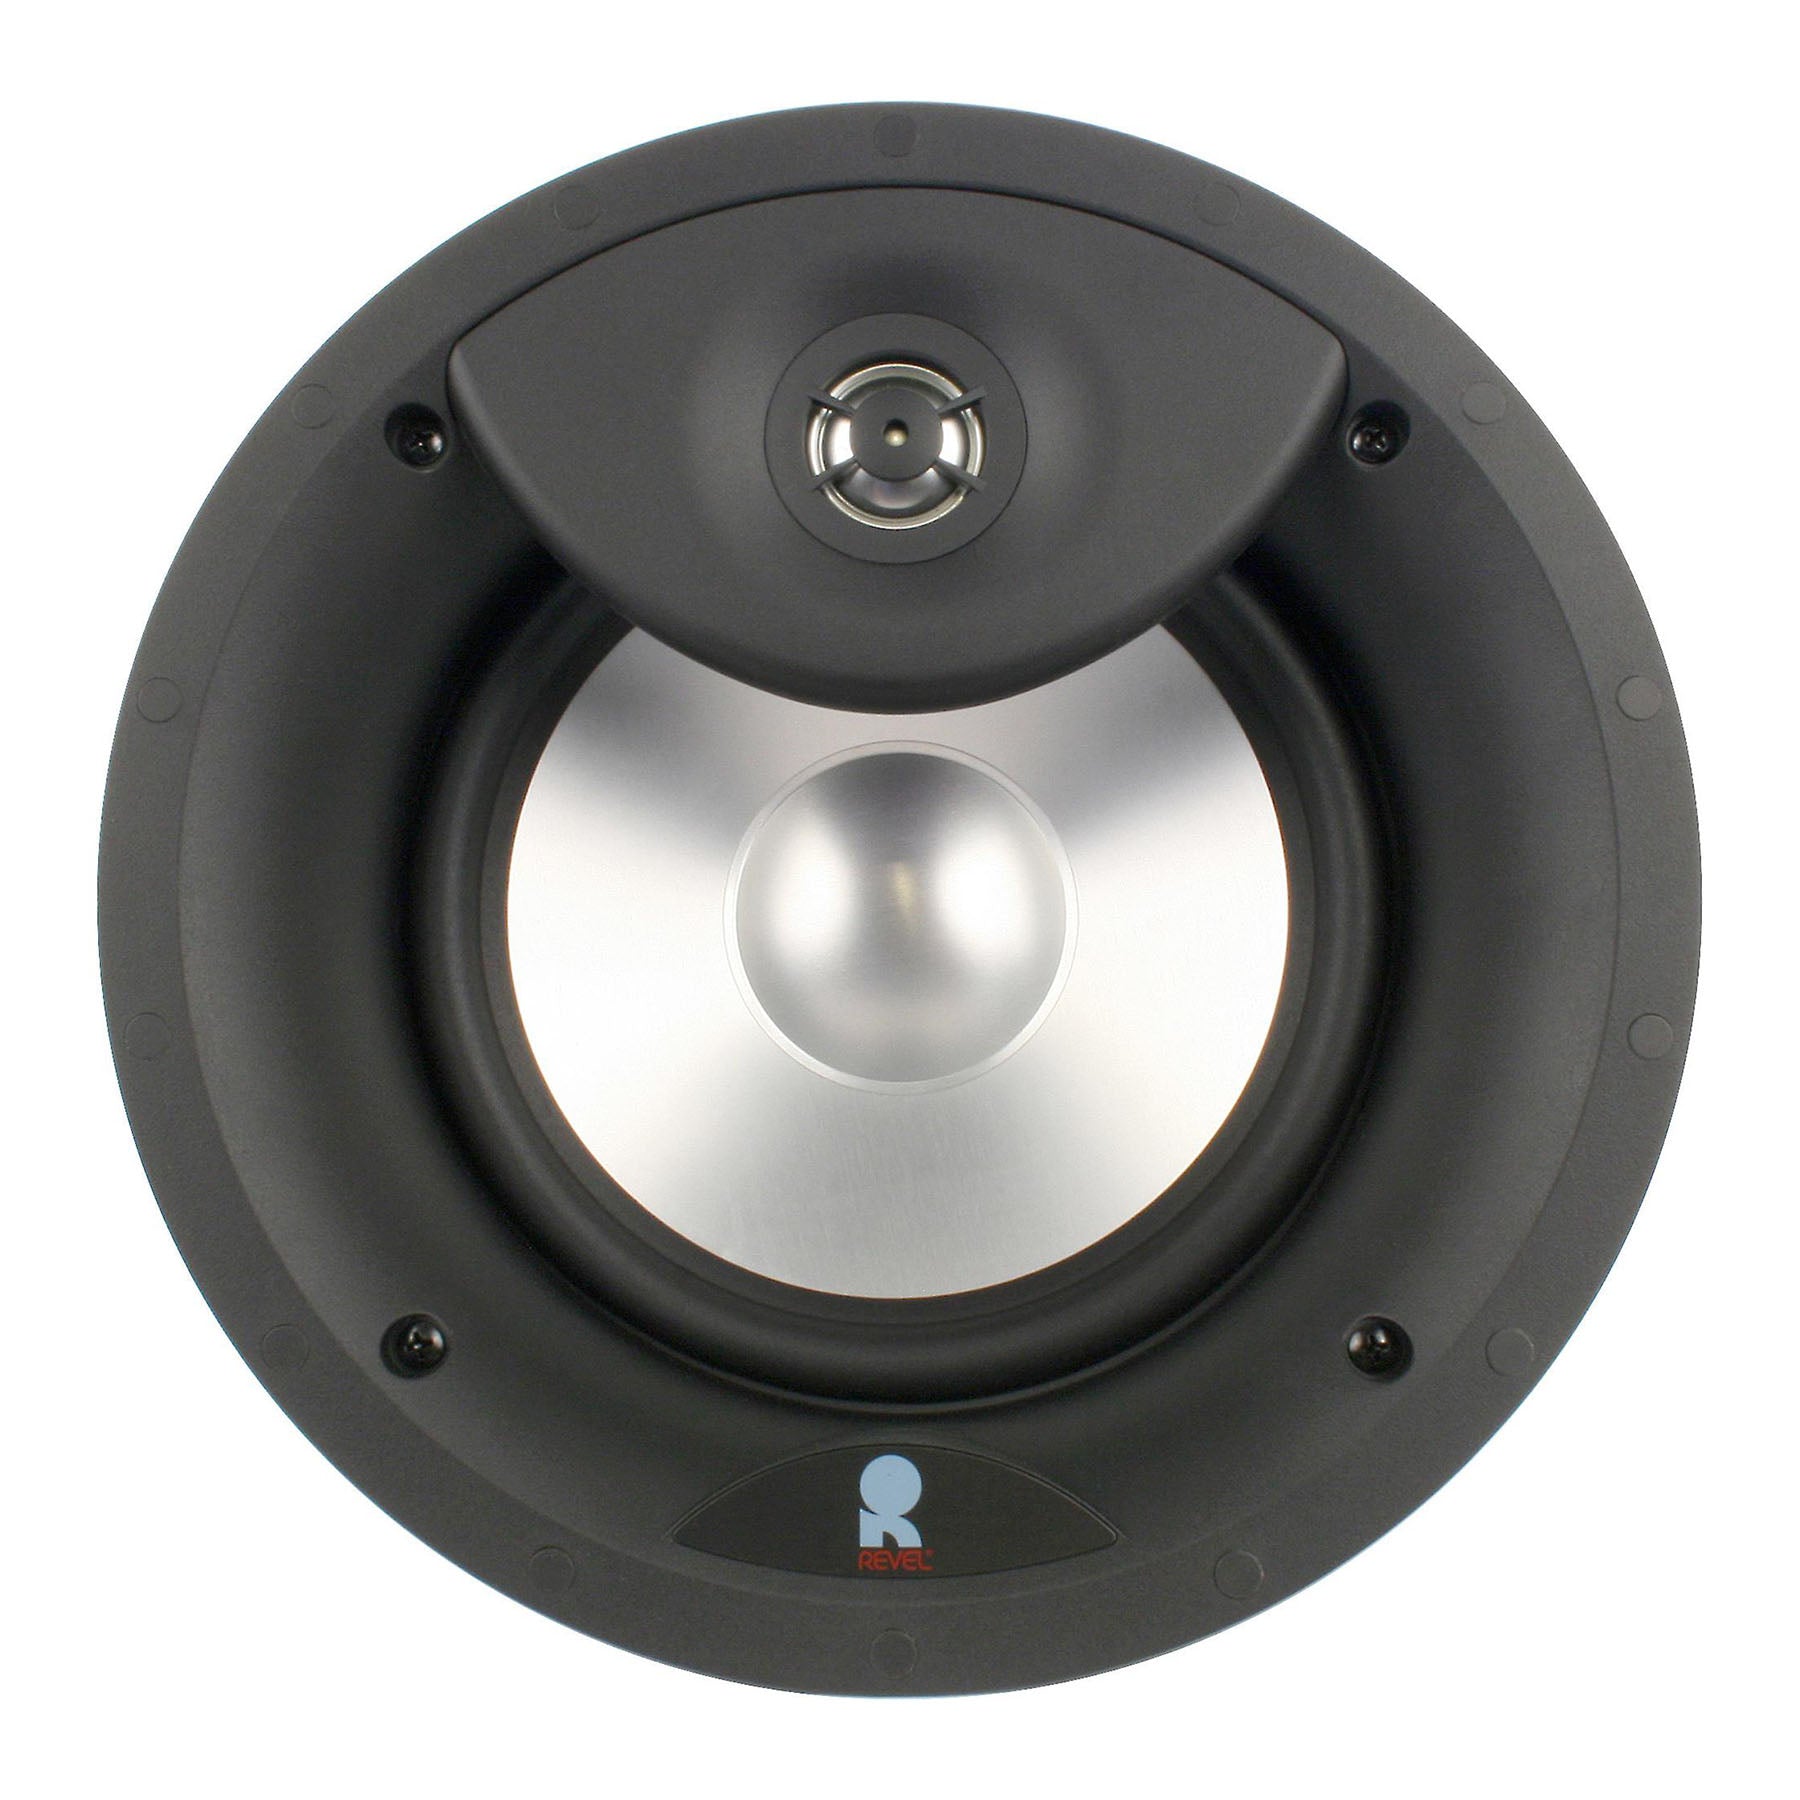 Revel C283 8" In-ceiling Loudspeaker